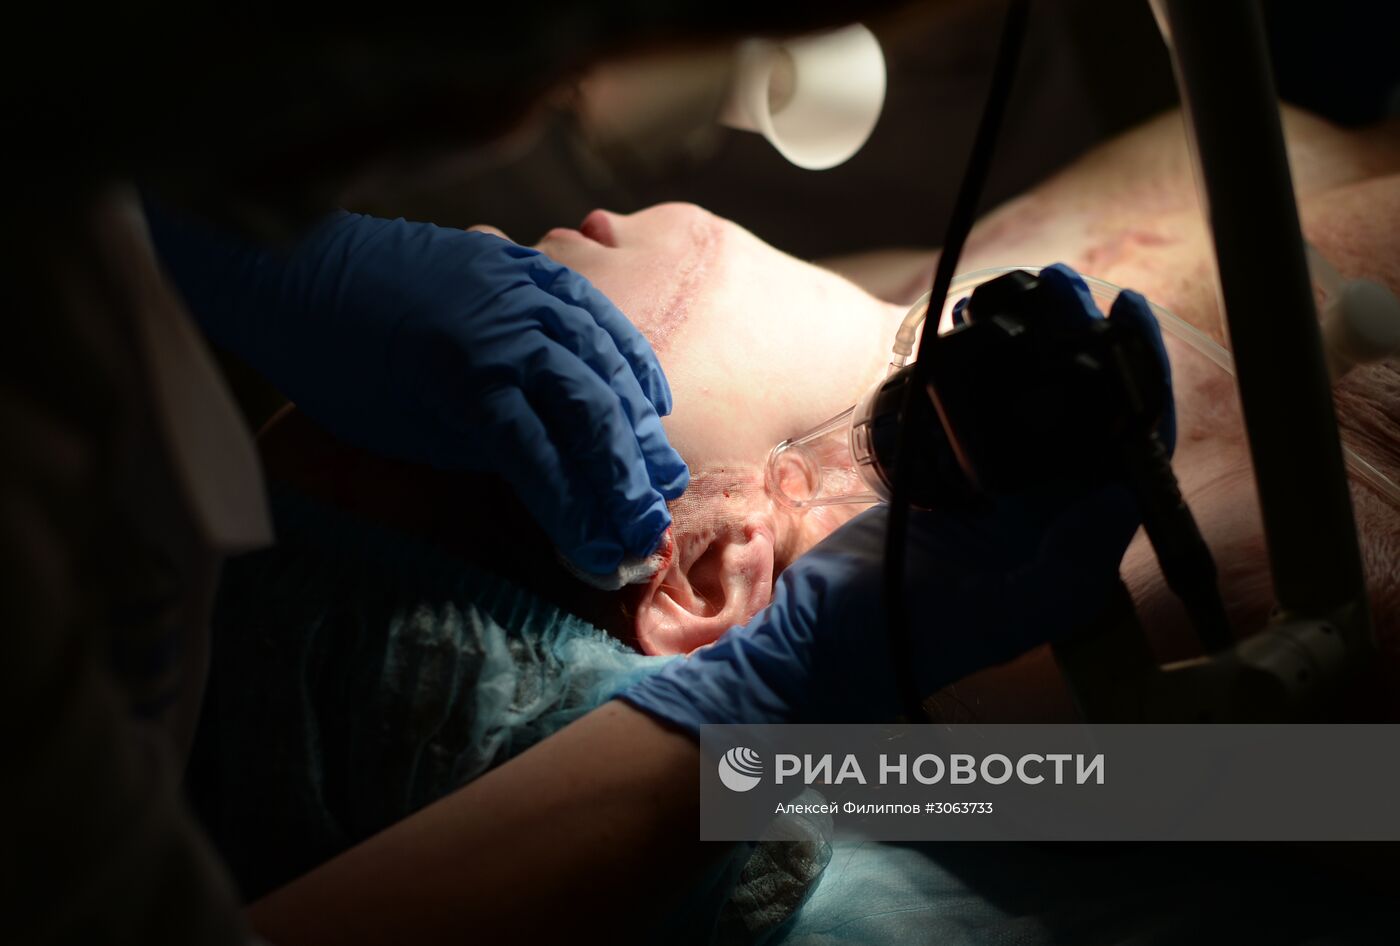 Институт пластической хирургии и косметологии в Москве